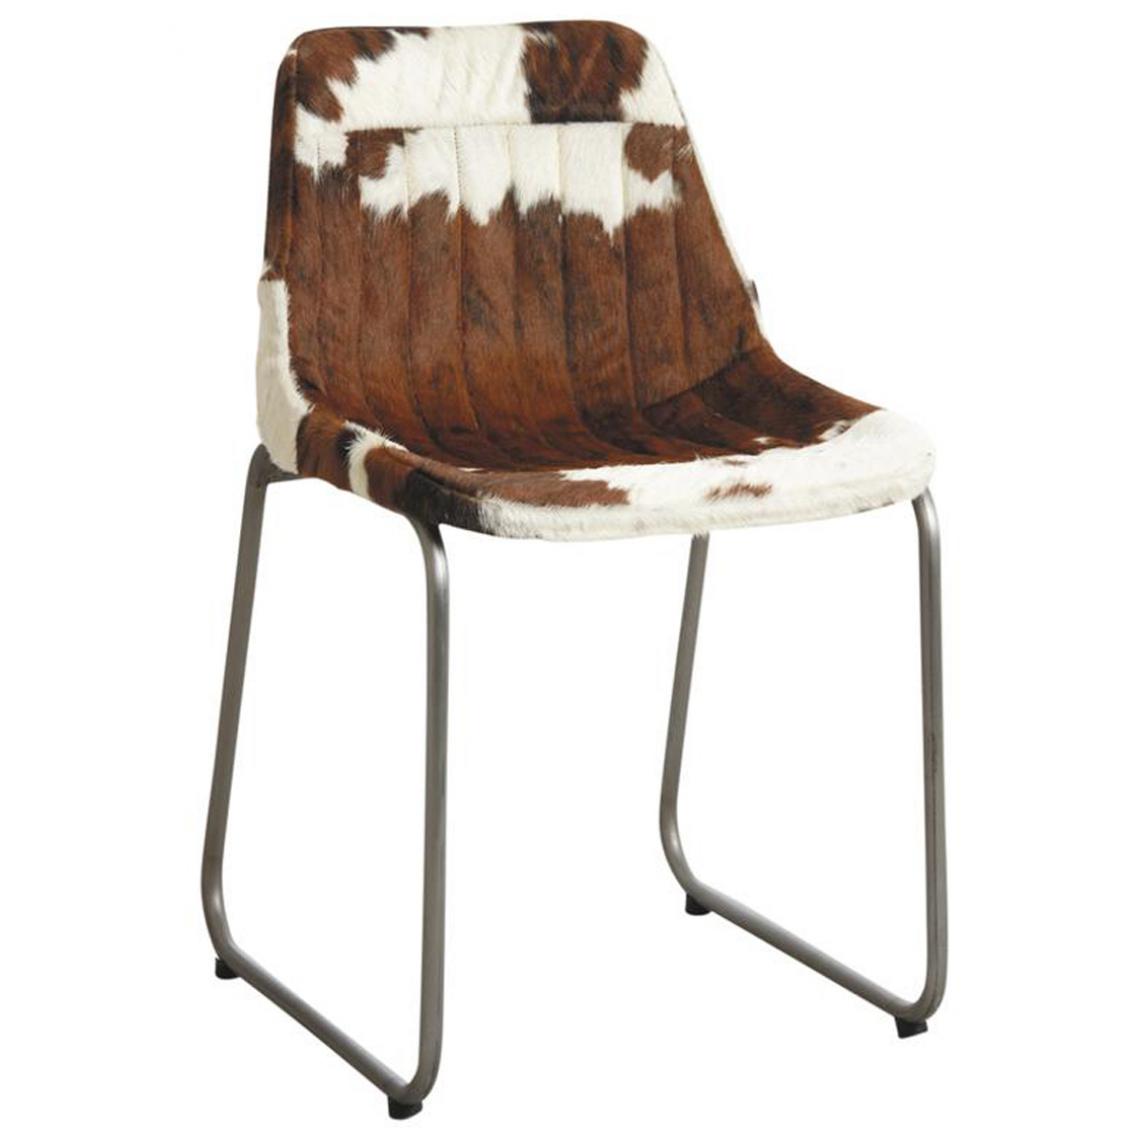 Pegane - Chaise en métal et peau de vache marron et blanche - 46 x 49 x 89 cm -PEGANE- - Chaises